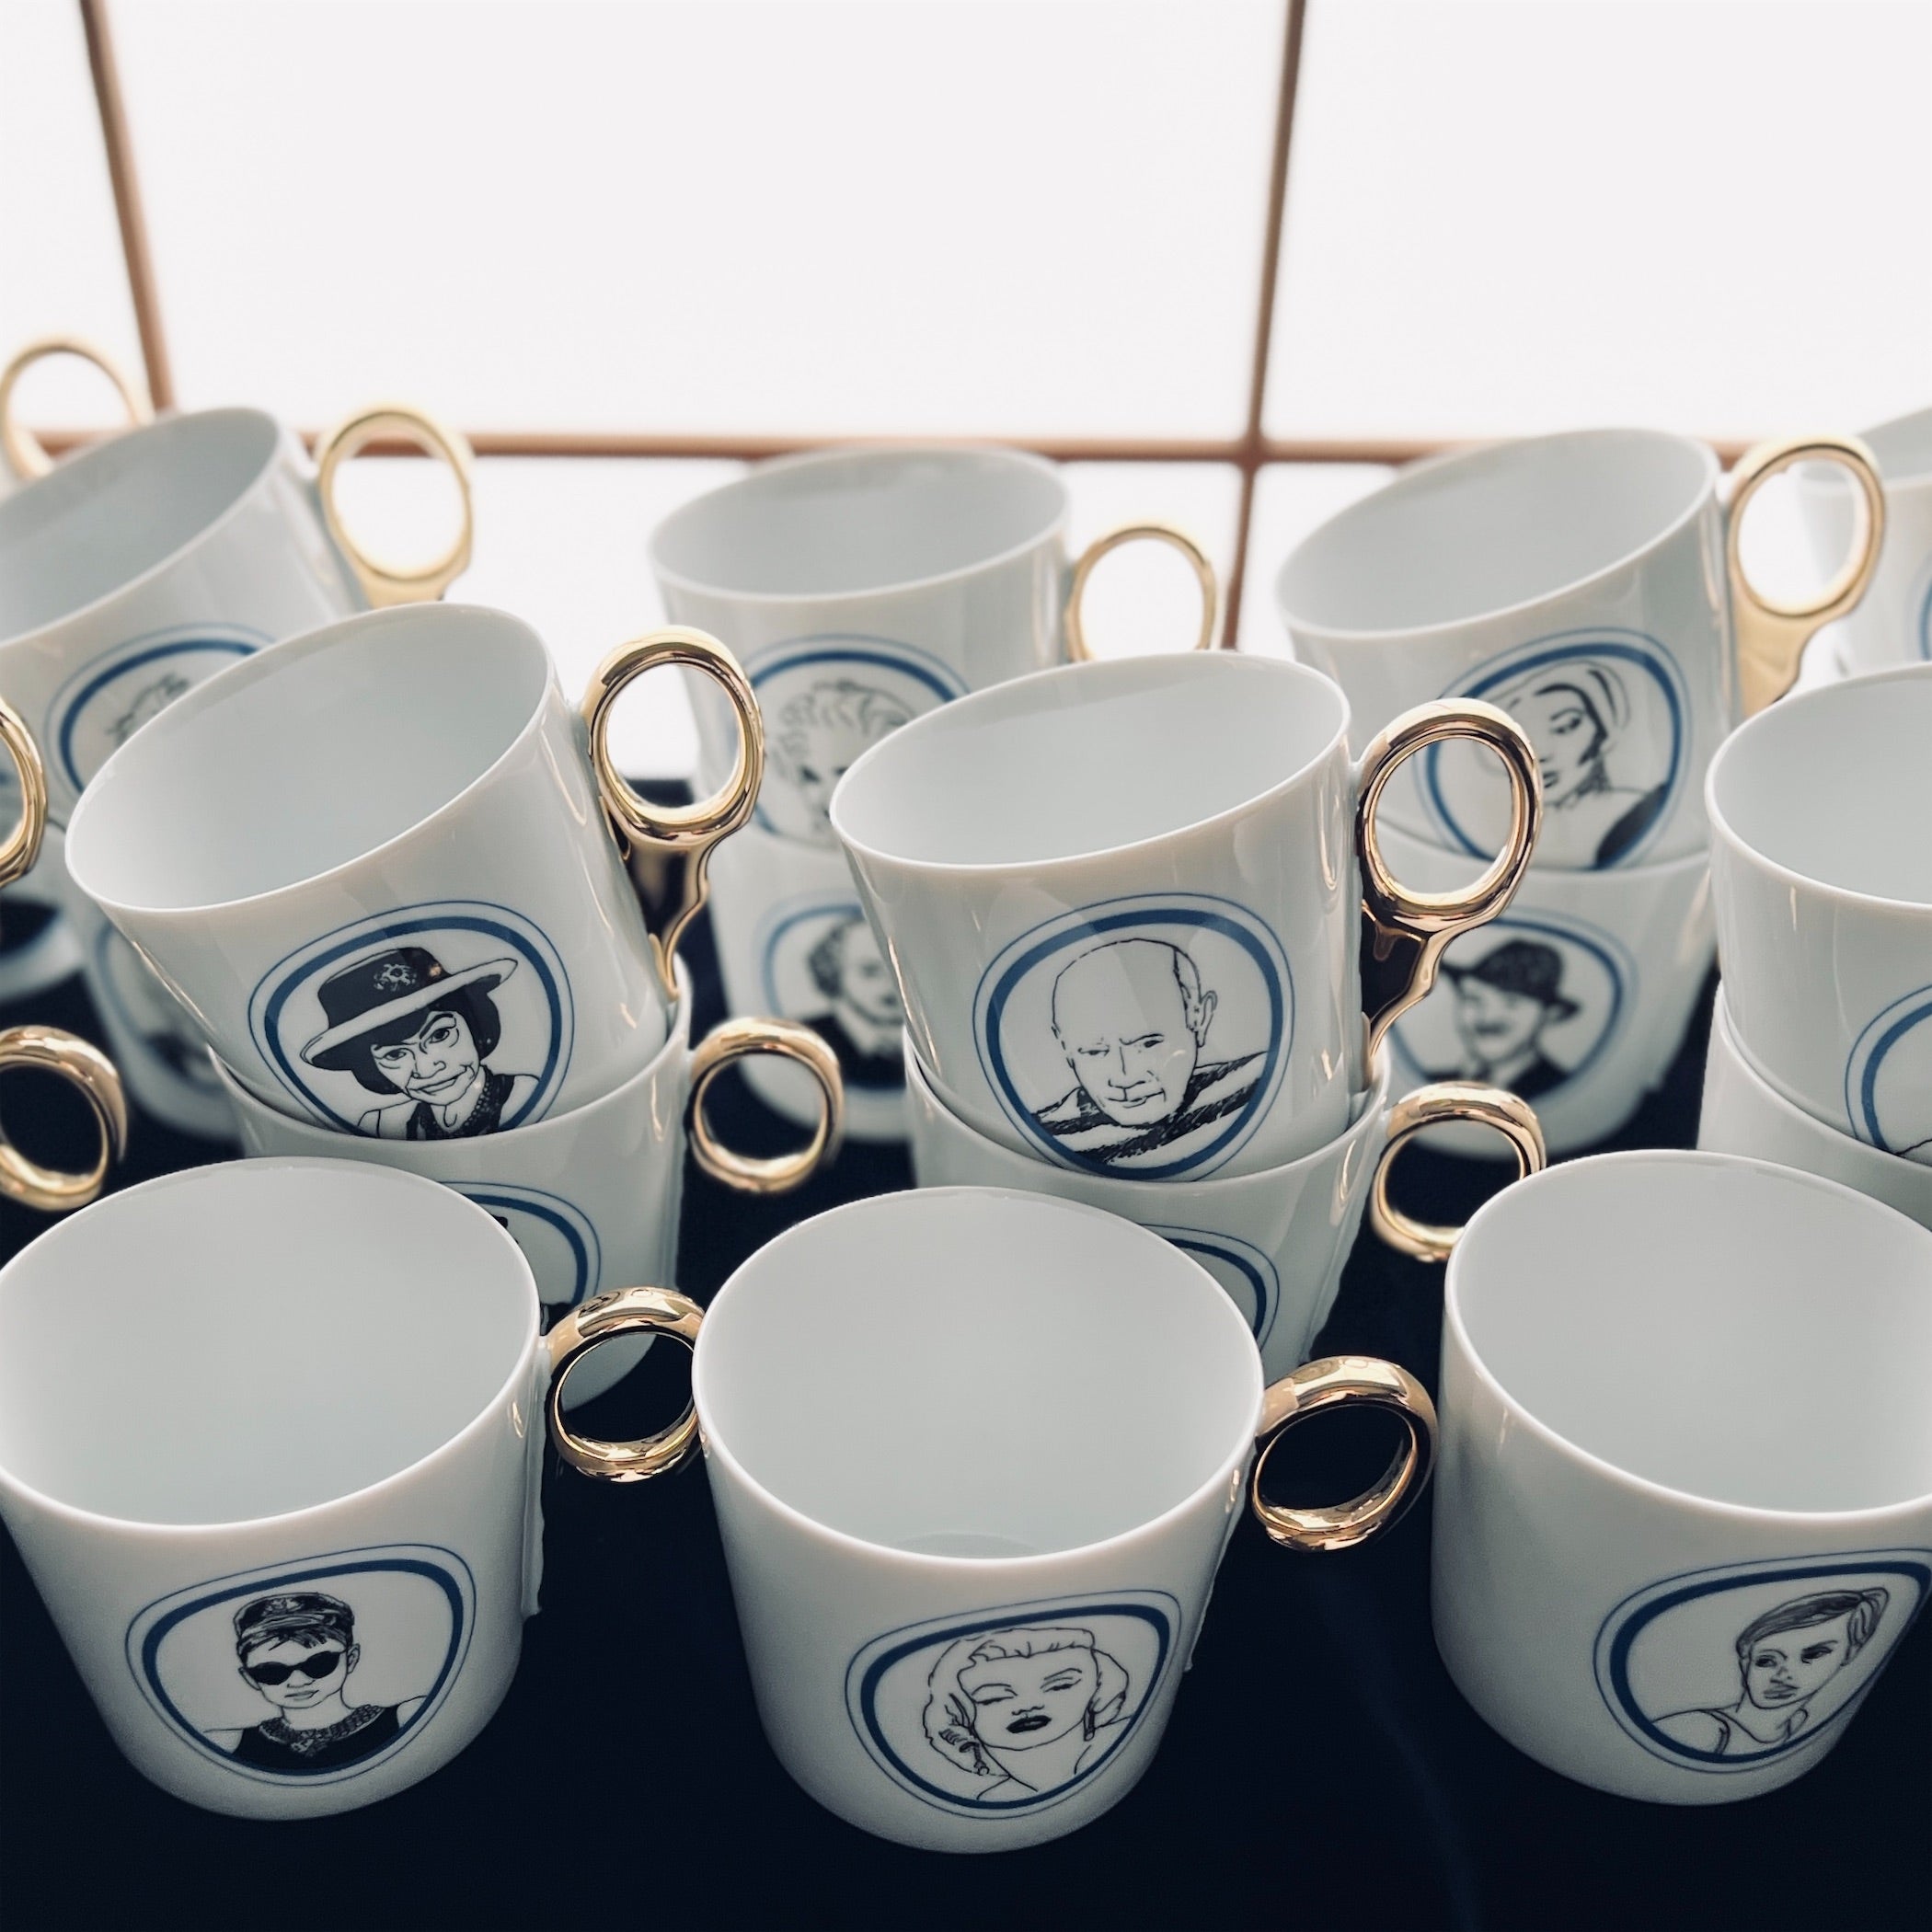 Kuhn Keramik】Vivienne Westwood Panth_on cup | フィールシーン